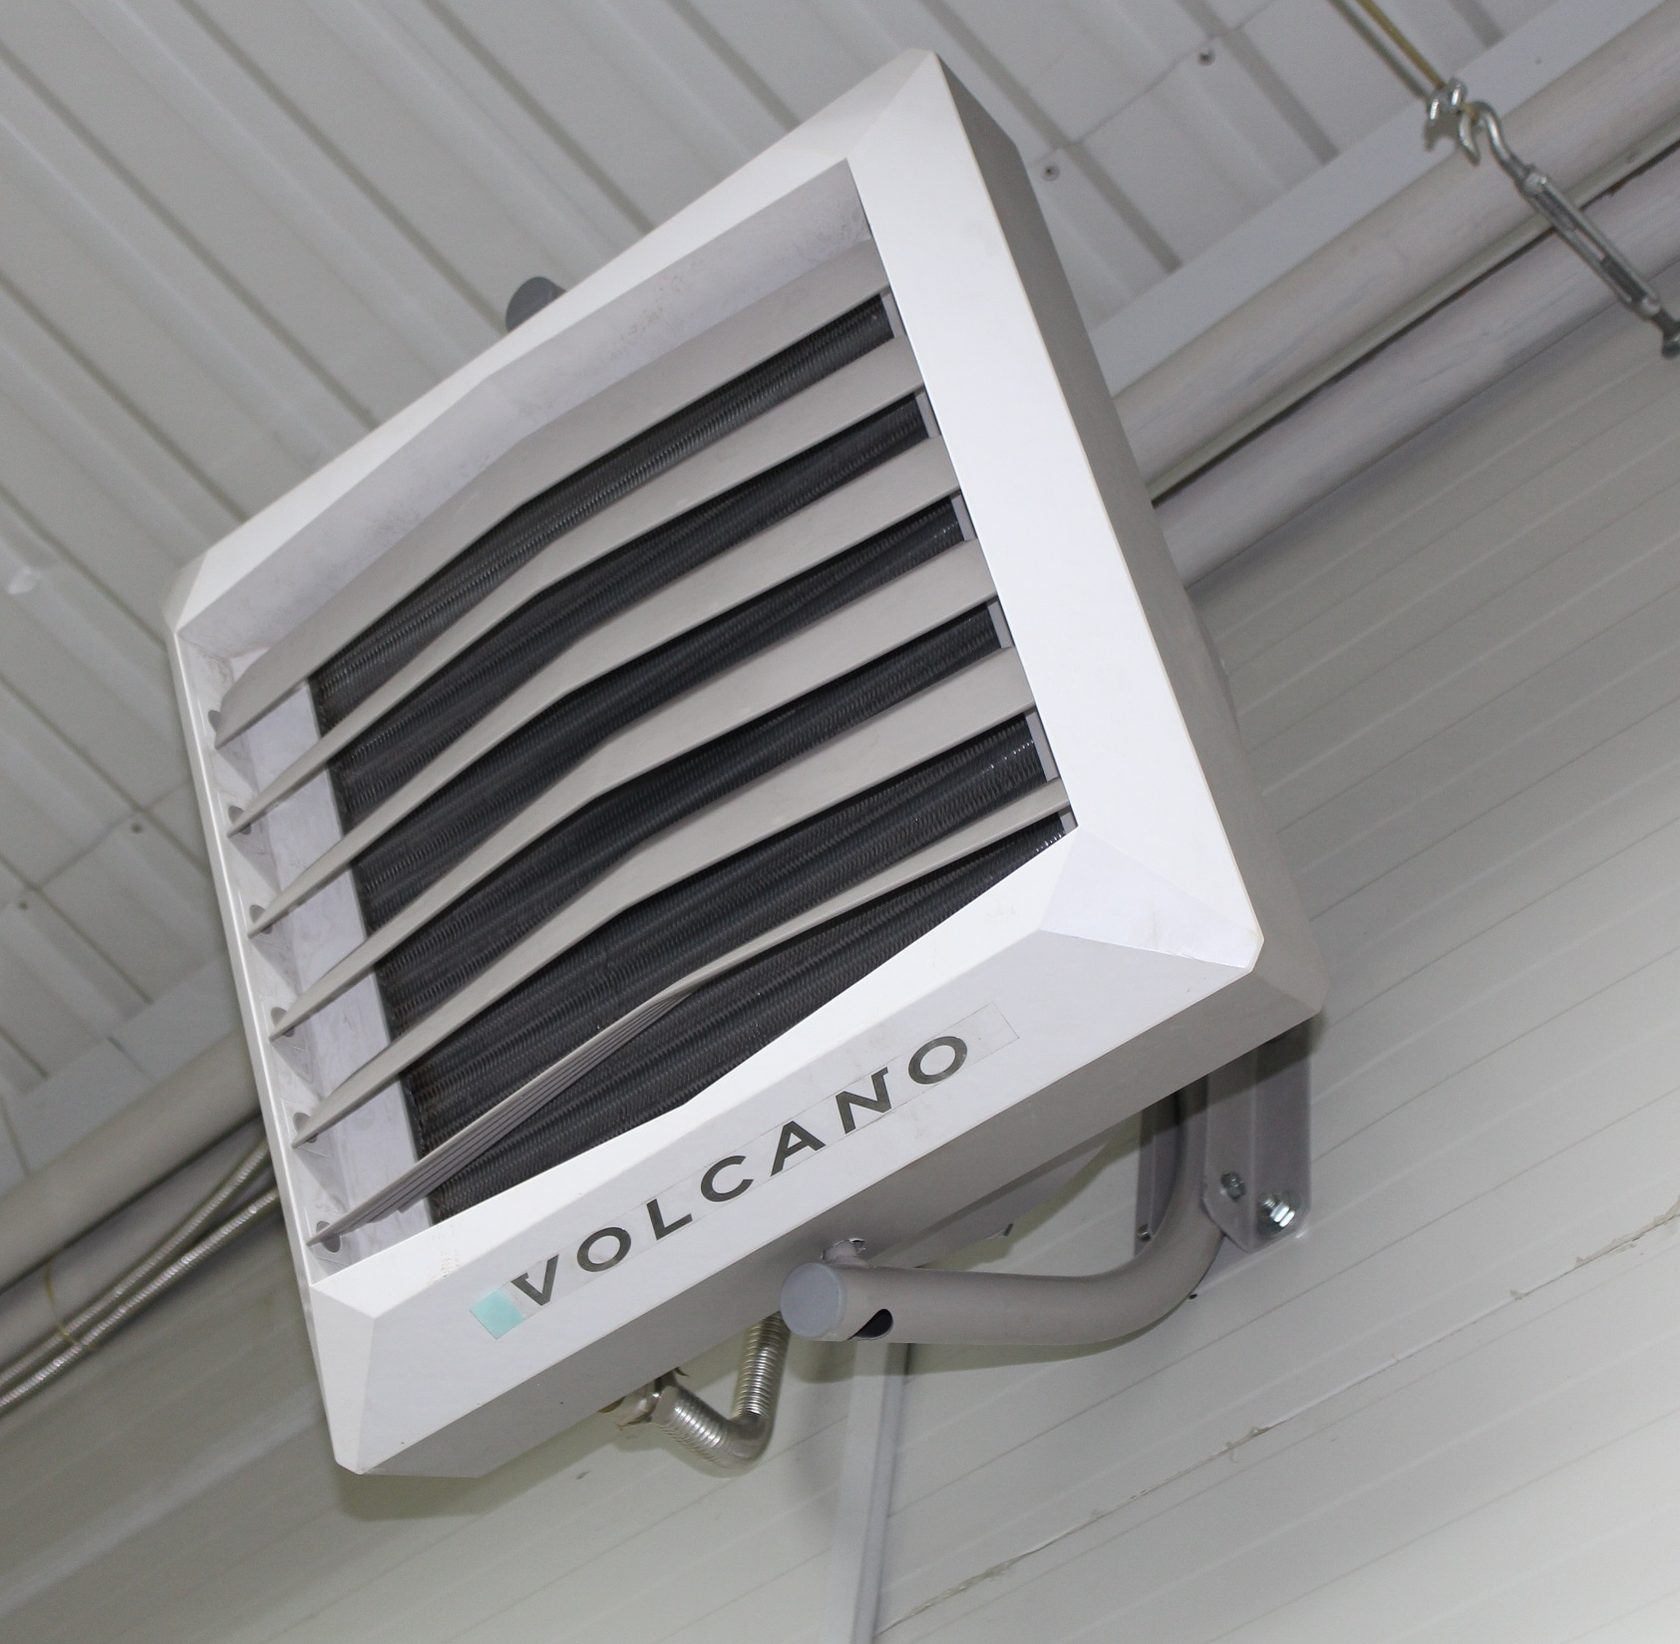 Новости Днепра про Область применения тепловентиляторов «Volcano»